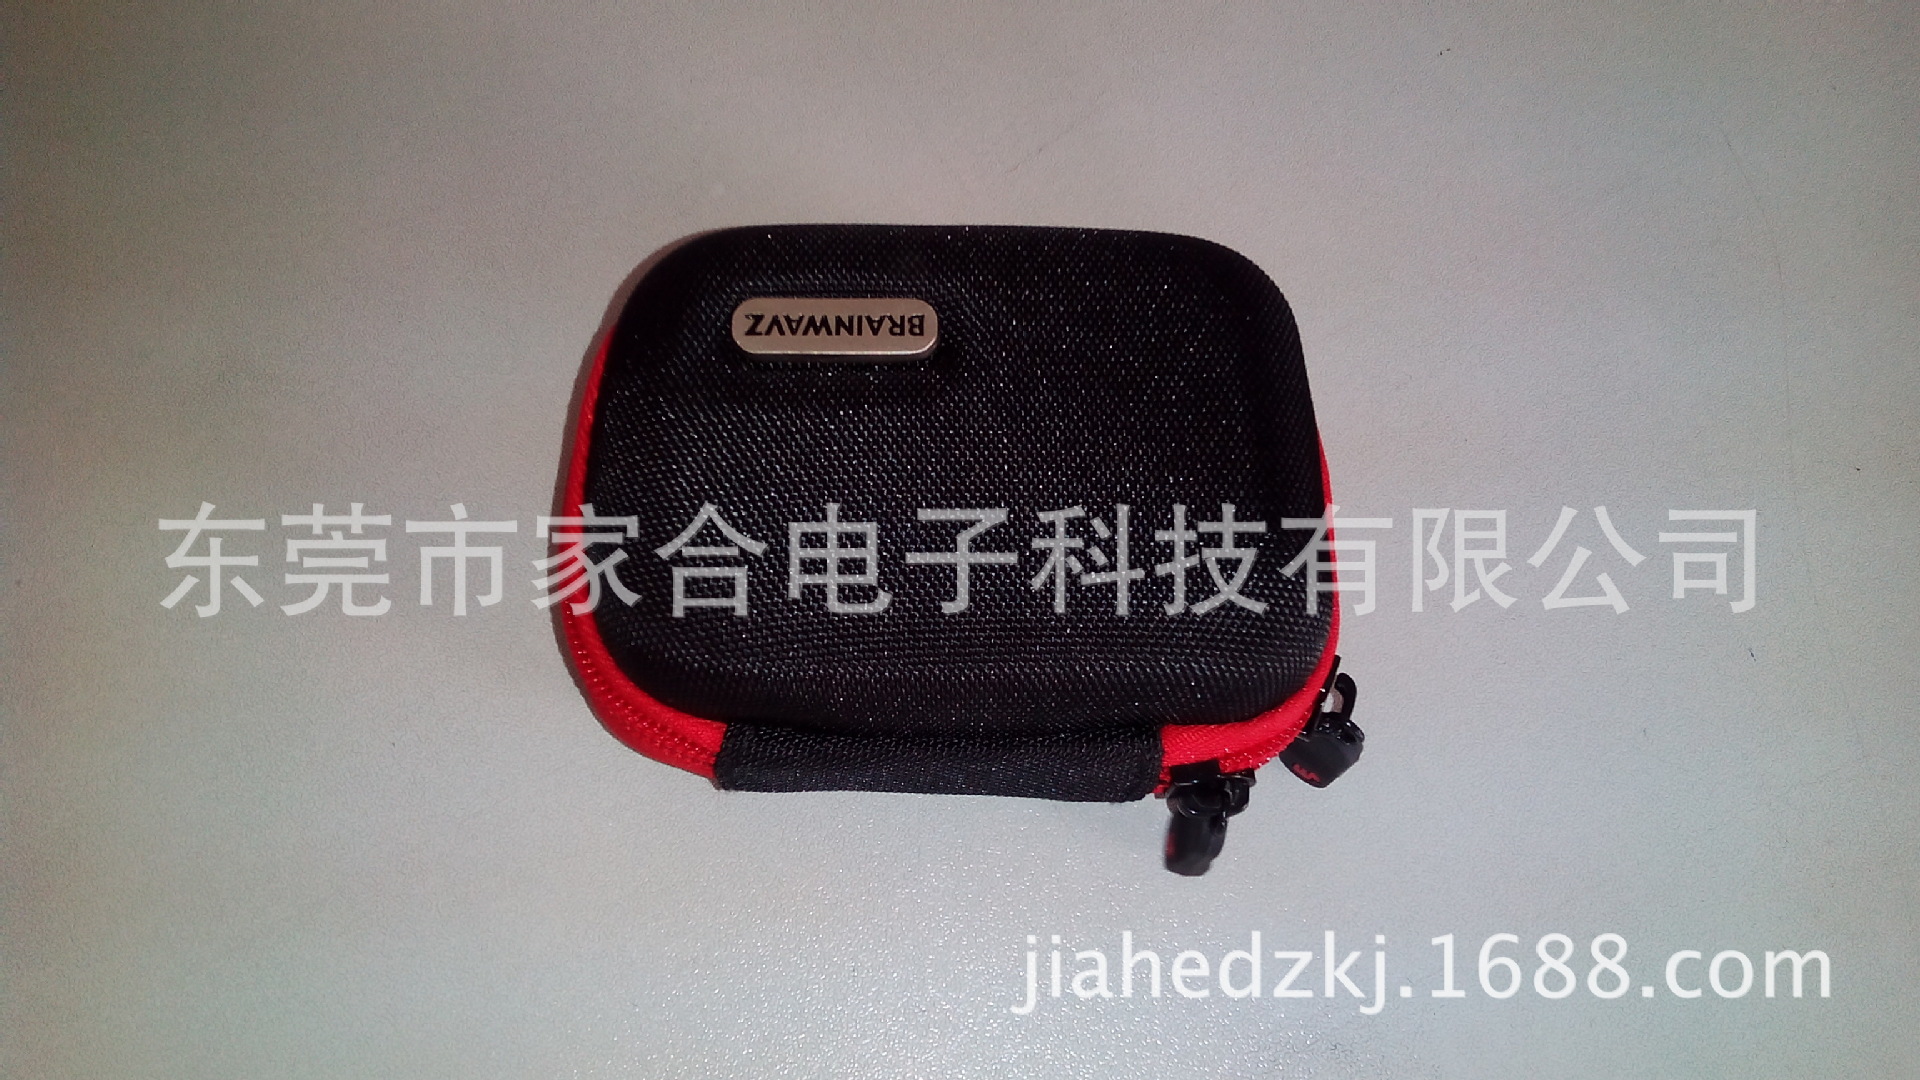 耳機箱包JH2014001 (5)